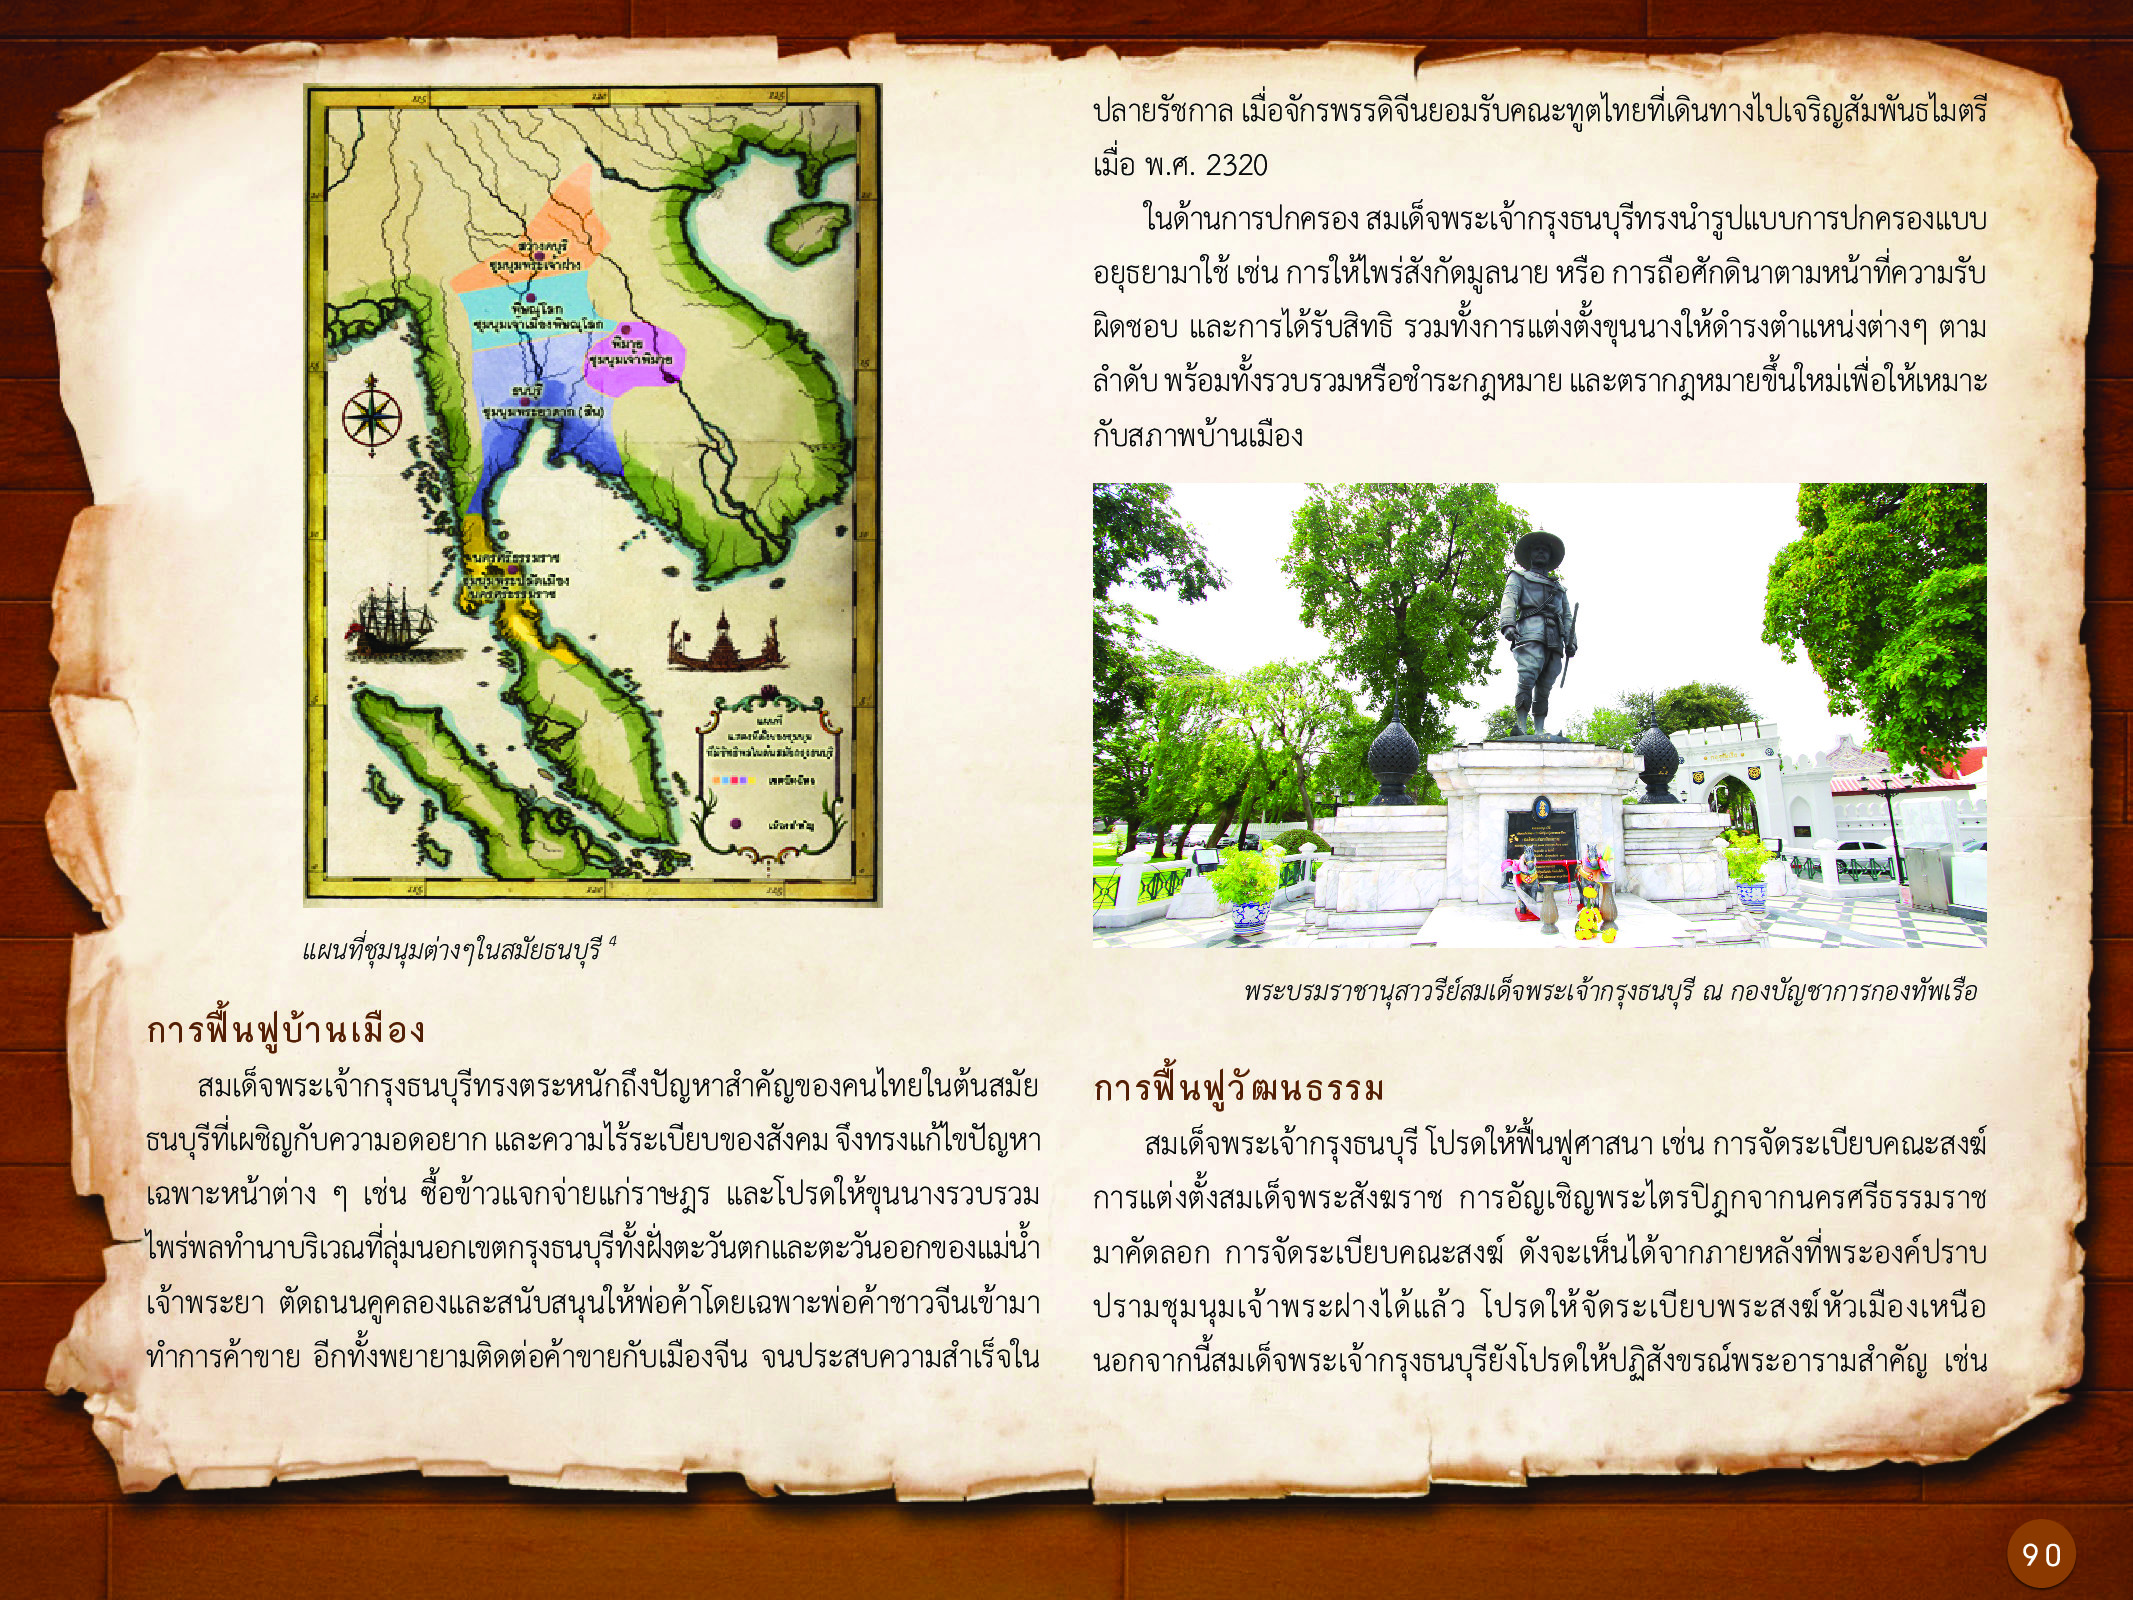 ประวัติศาสตร์กรุงธนบุรี ./images/history_dhonburi/90.jpg